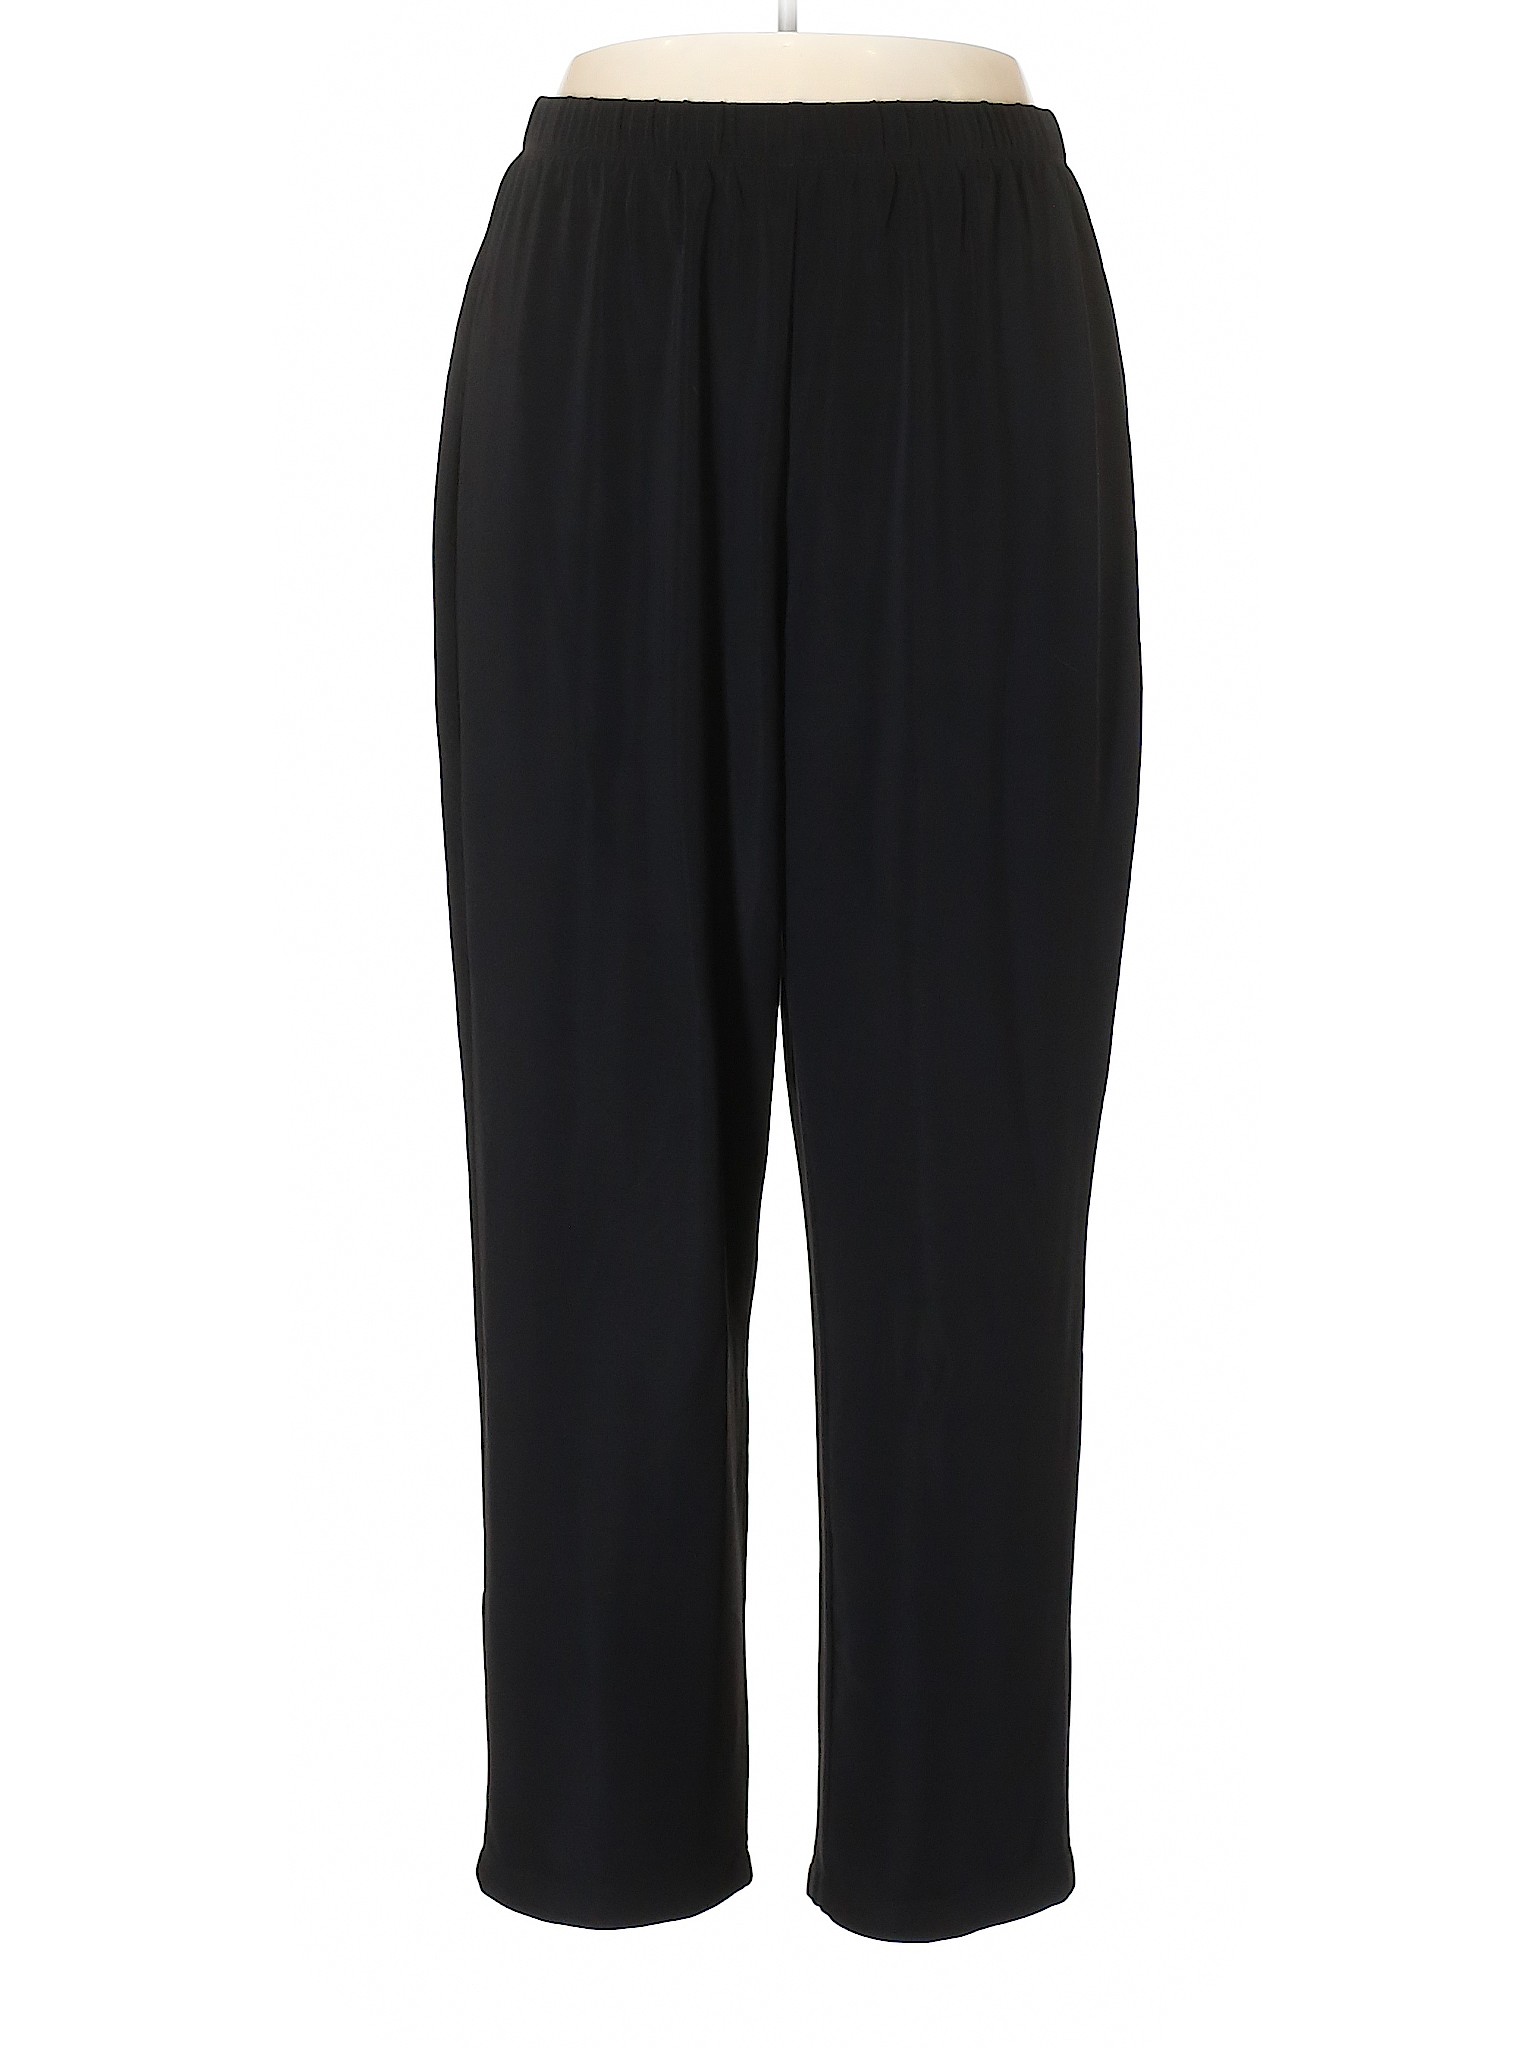 Susan Graver Solid Black Casual Pants Size 1X (Plus) - 81% off | thredUP